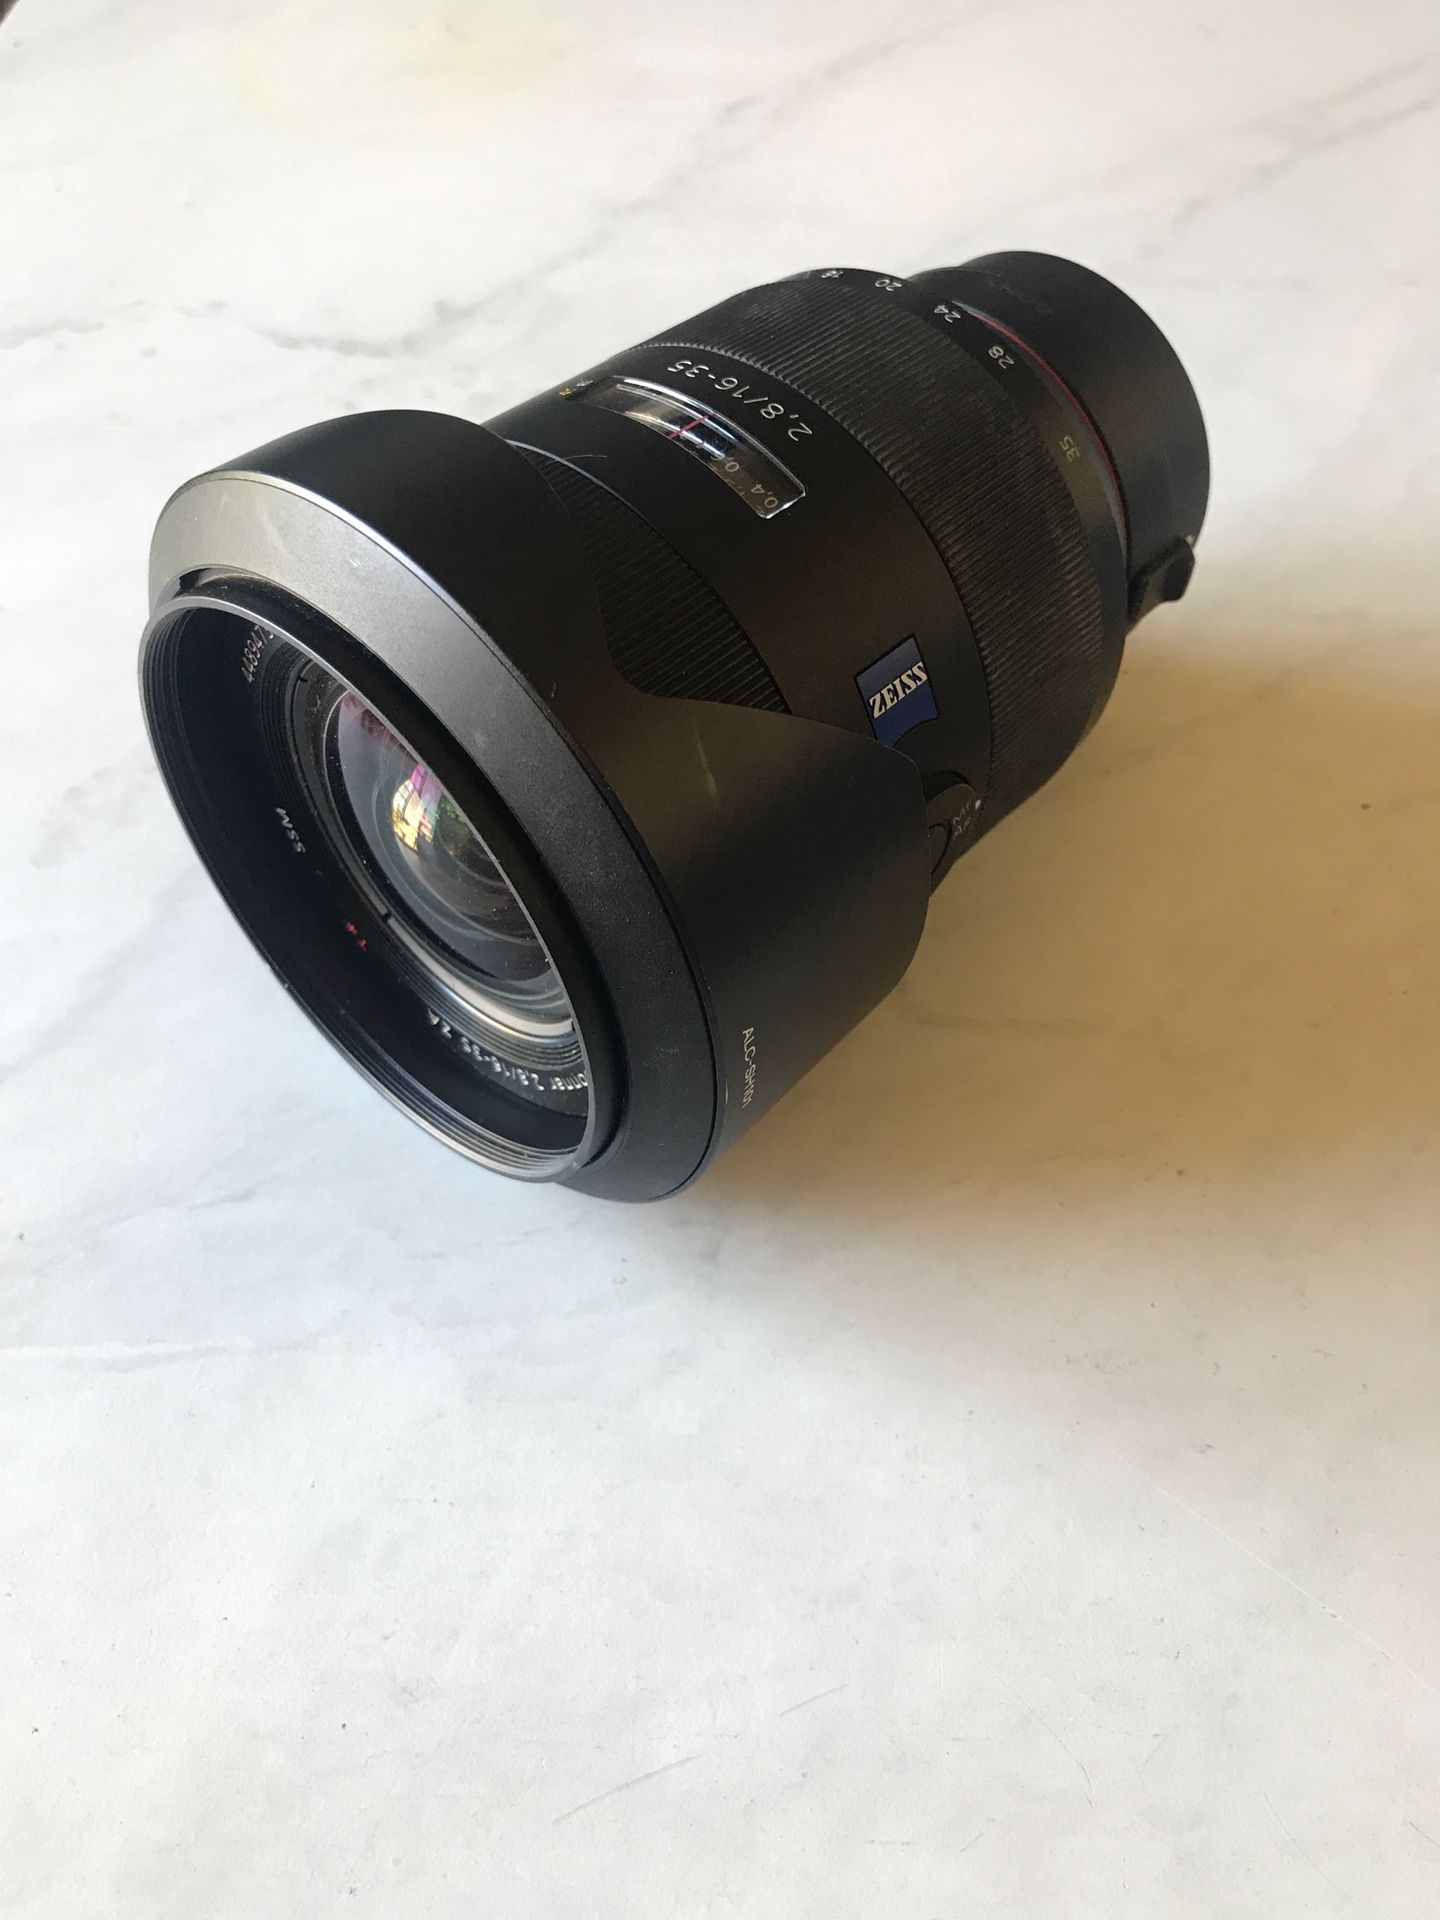 Sony Zeiss 16-35mm f2.8 full frame lens